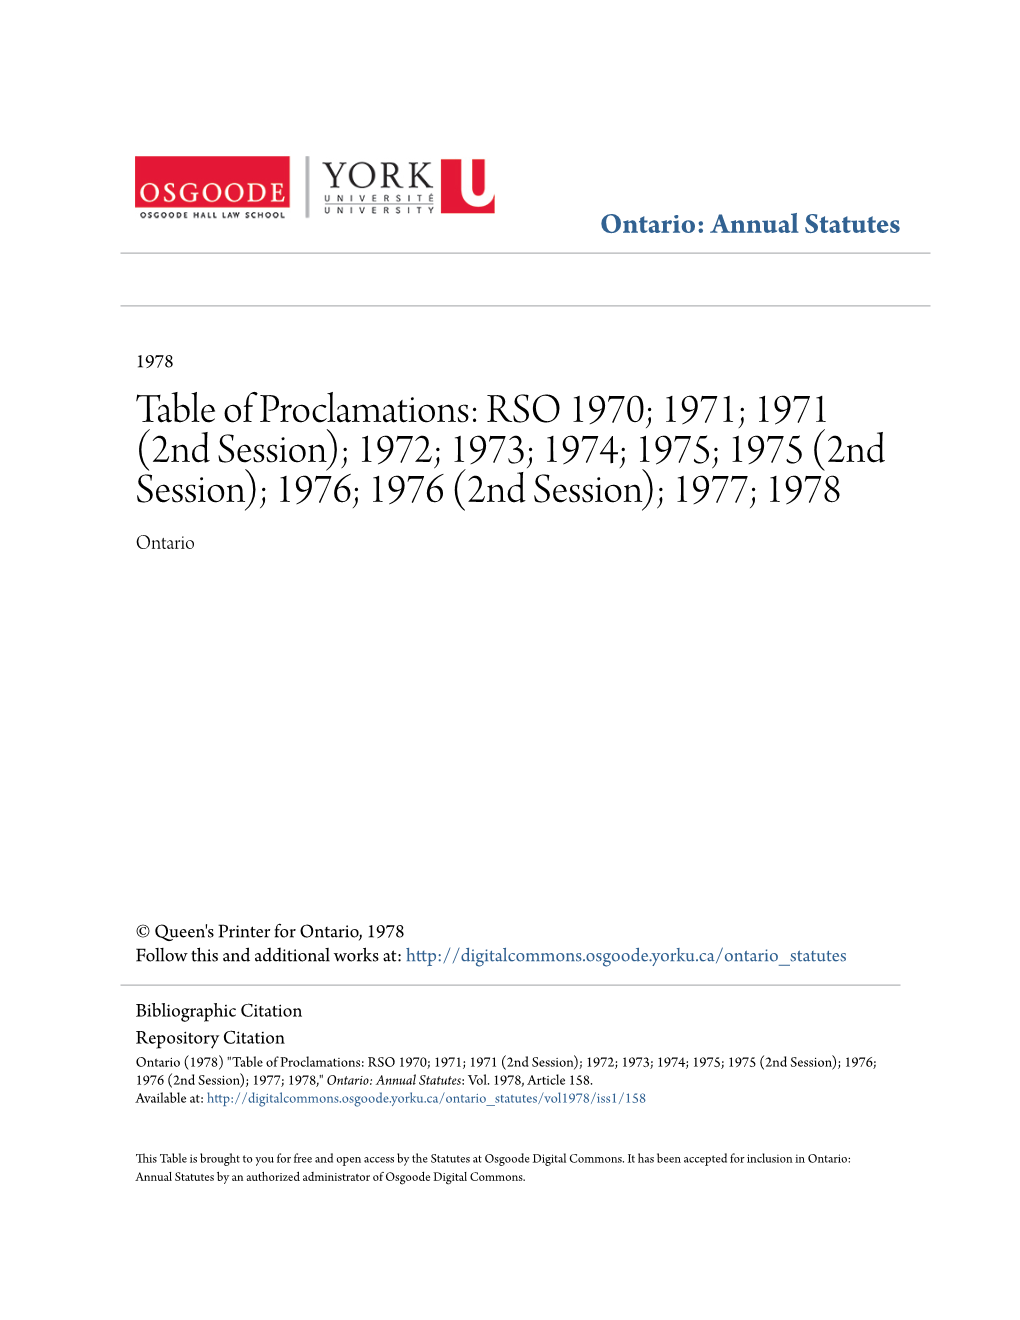 (2Nd Session); 1972; 1973; 1974; 1975; 1975 (2Nd Session); 1976; 1976 (2Nd Session); 1977; 1978 Ontario